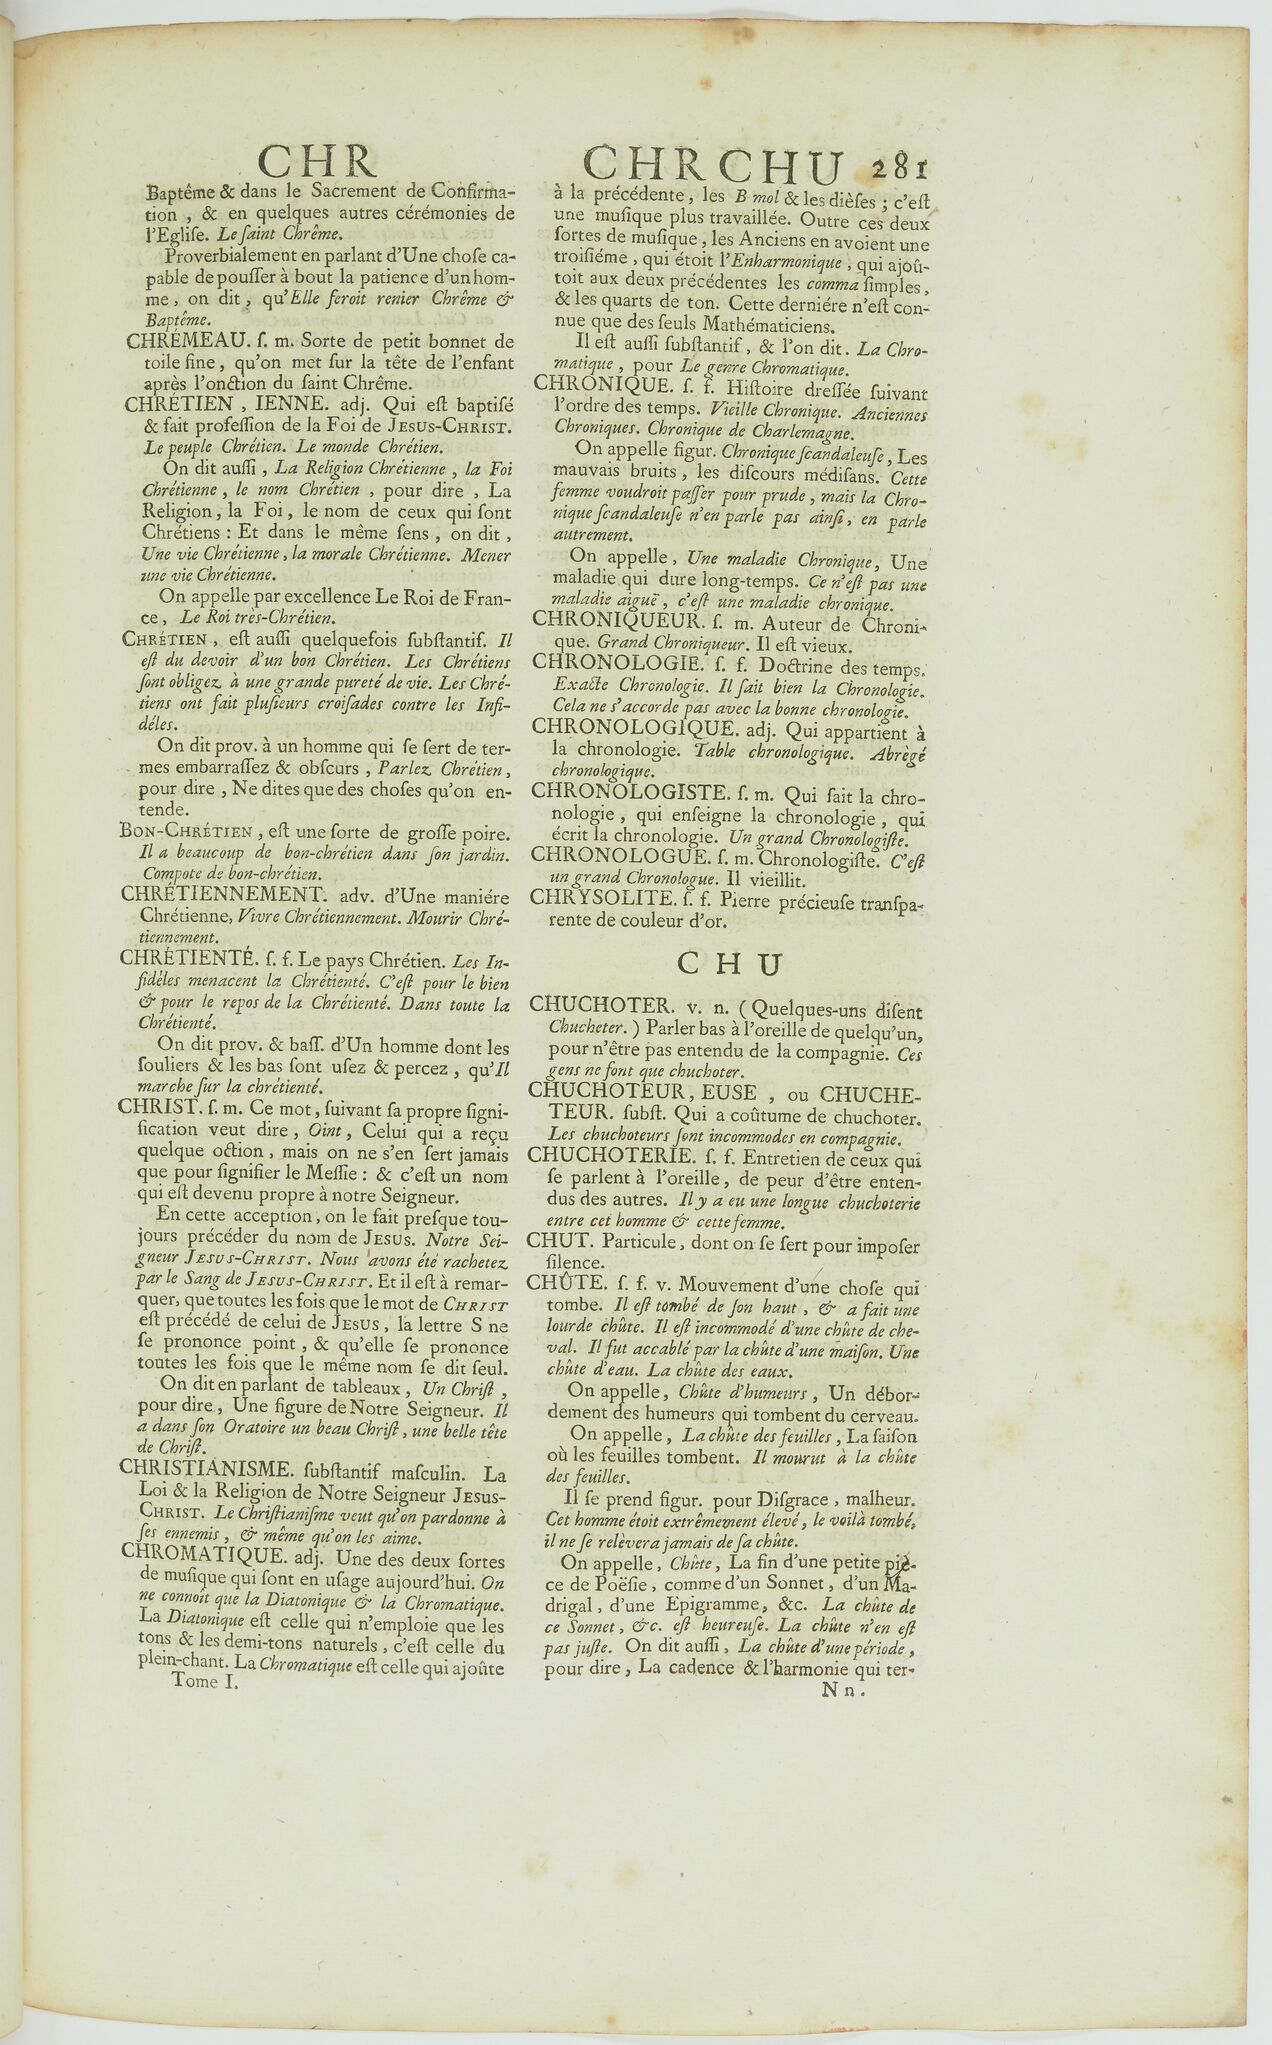 Chuchoter Dictionnaire De L Academie Francaise 3e Edition